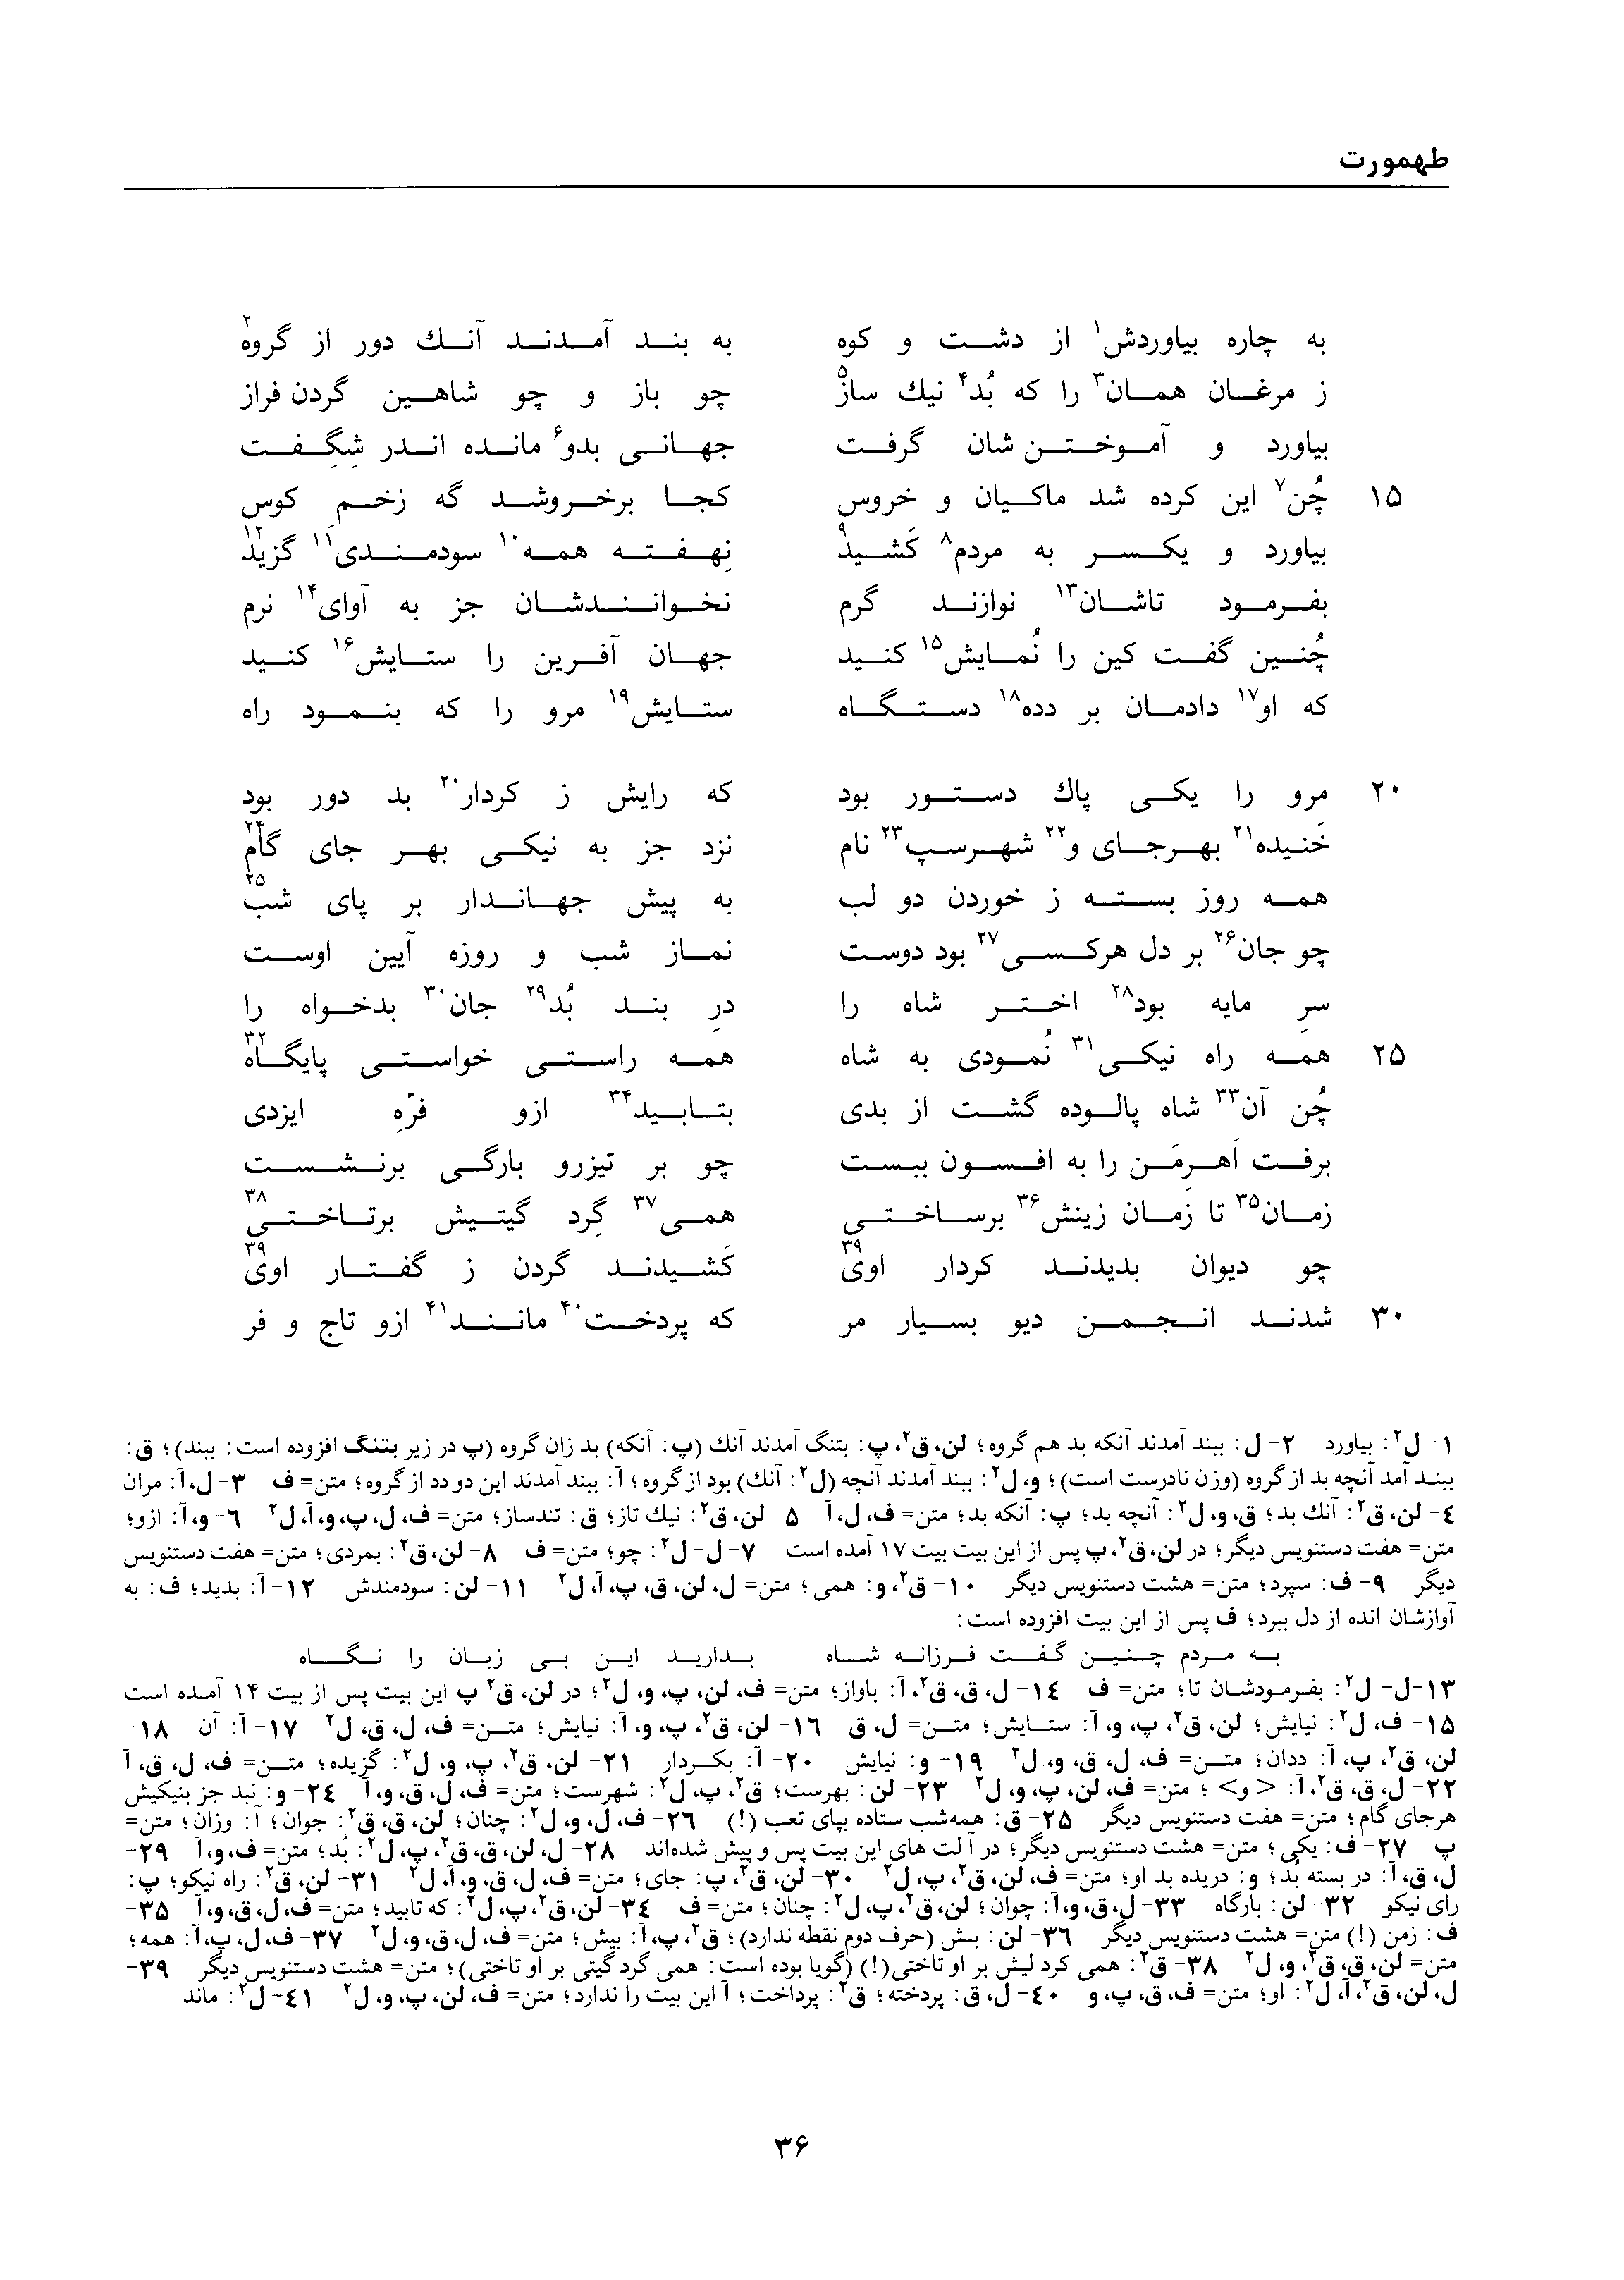 vol. 1, p. 36